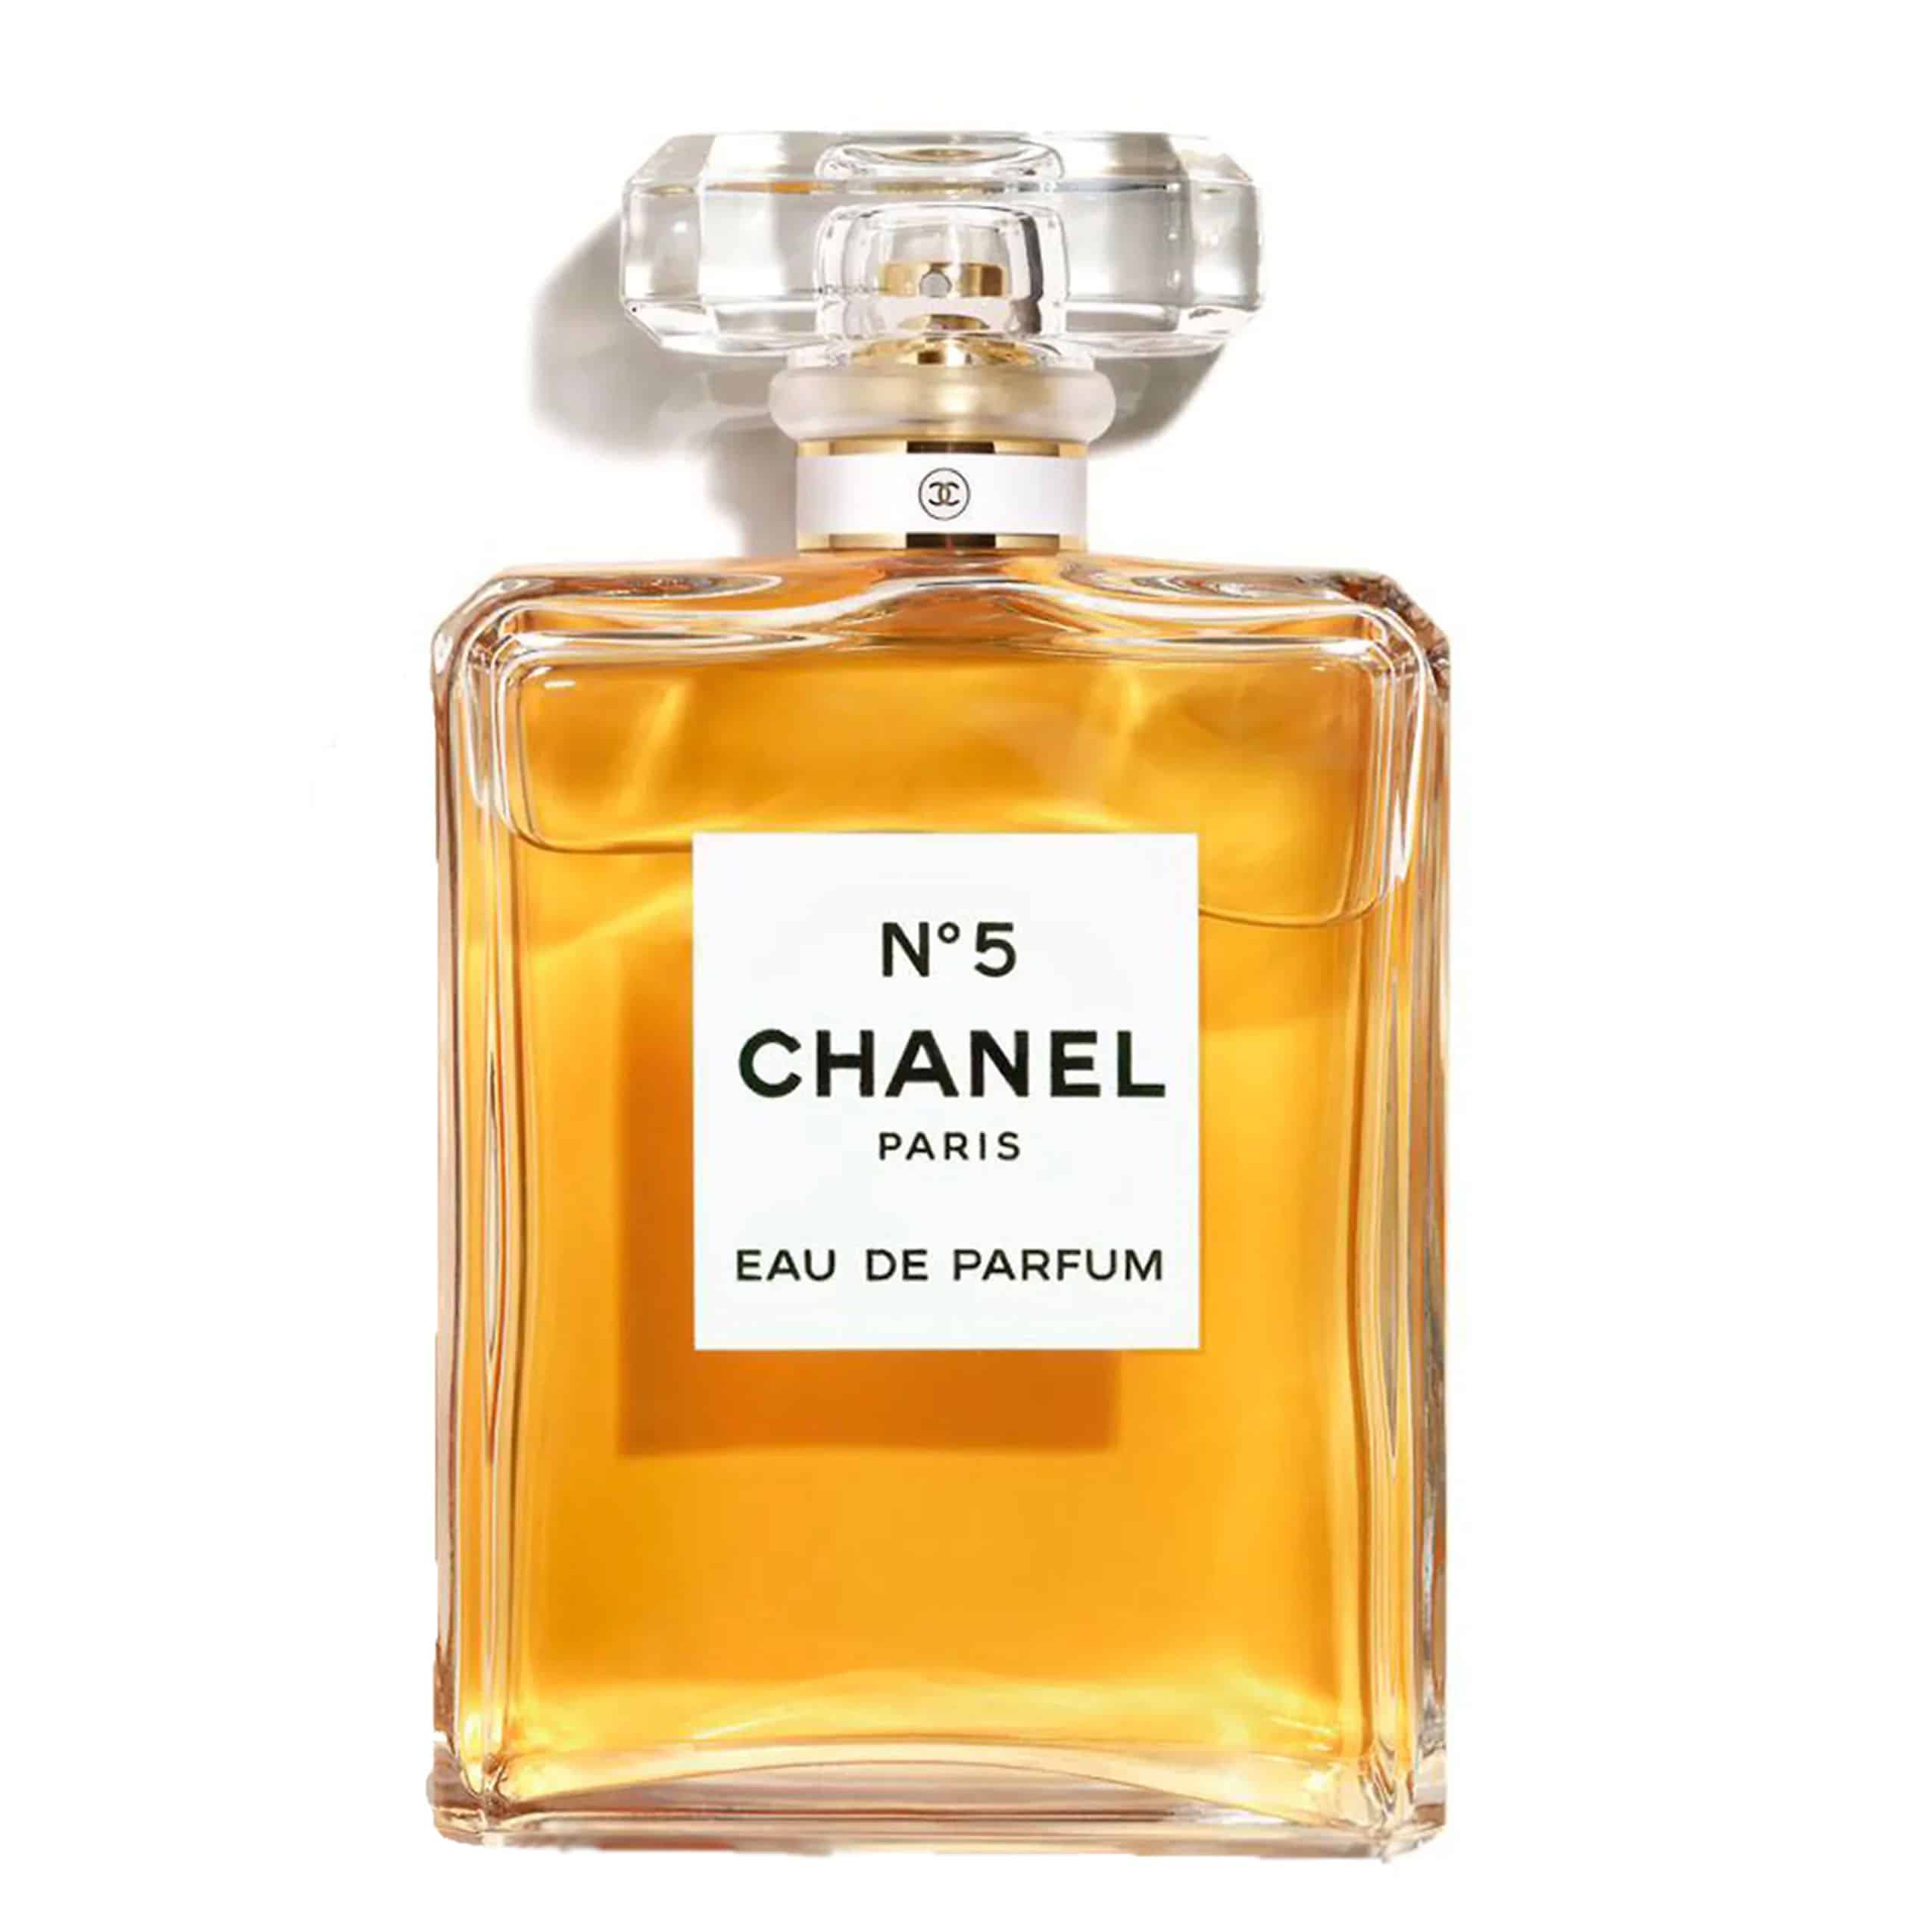 Chanel No 5 Eau de Parfum 100ml Limited Edition - My Perfume Shop